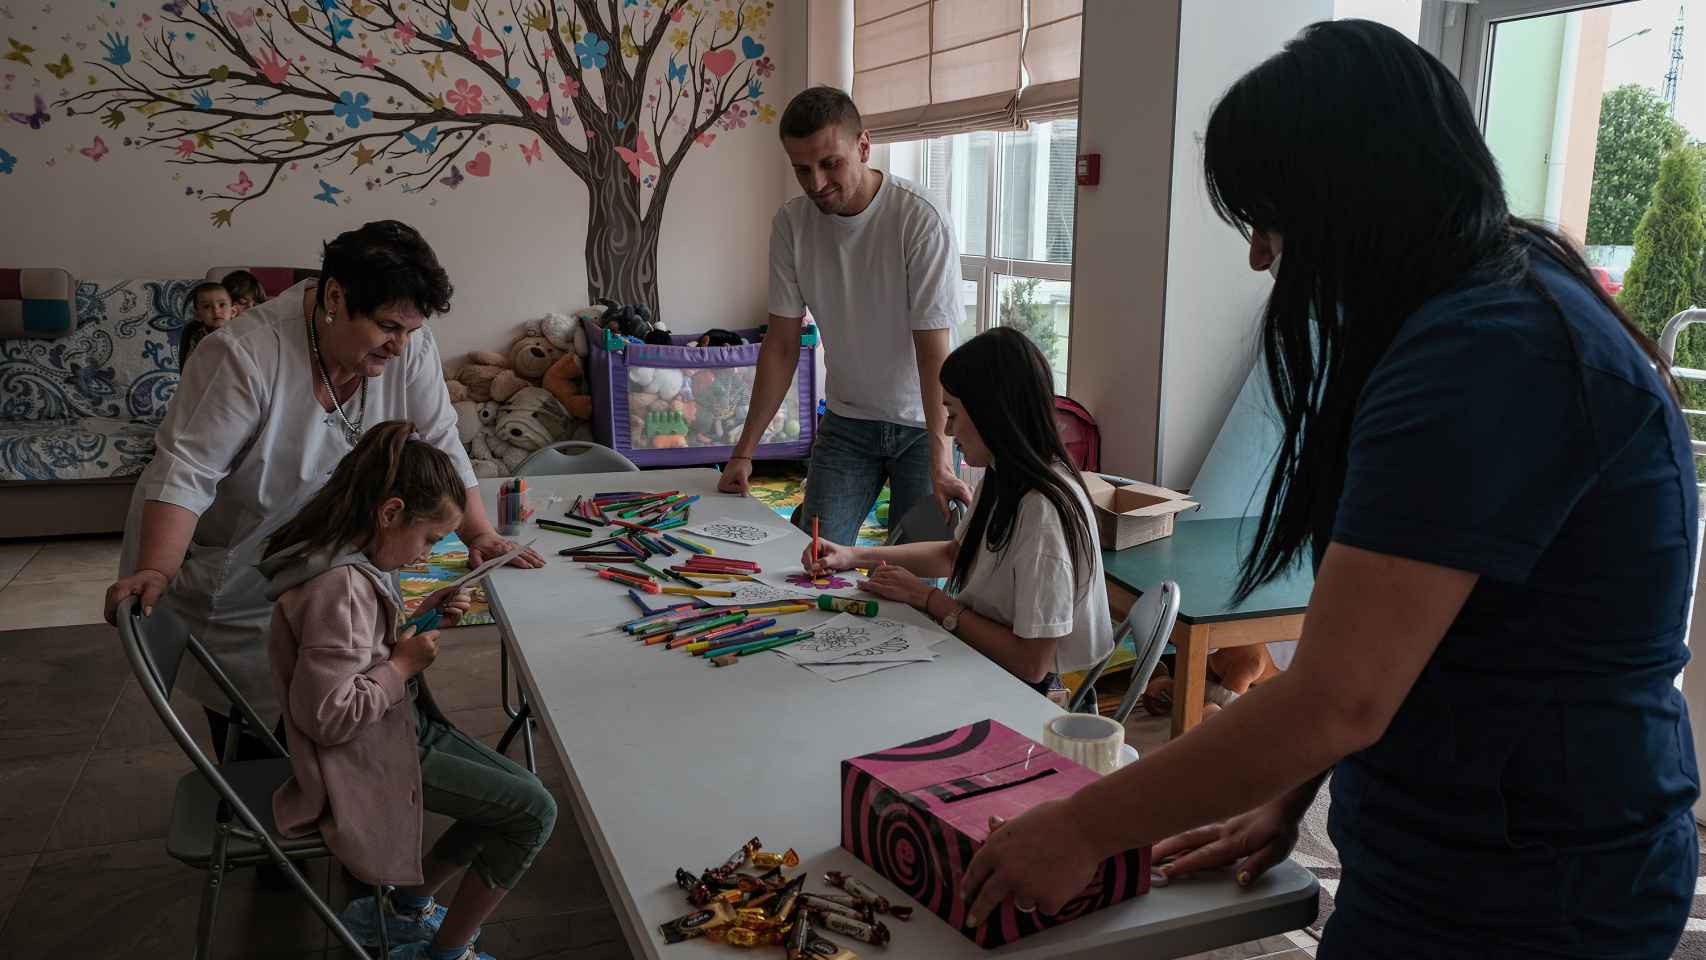 Sesión de terapia mediante el arte adaptada para niños con trastornos nerviosos, en una de las salas del Hospital y Hospicio Infantil de Cuidados Paliativos de Járkov